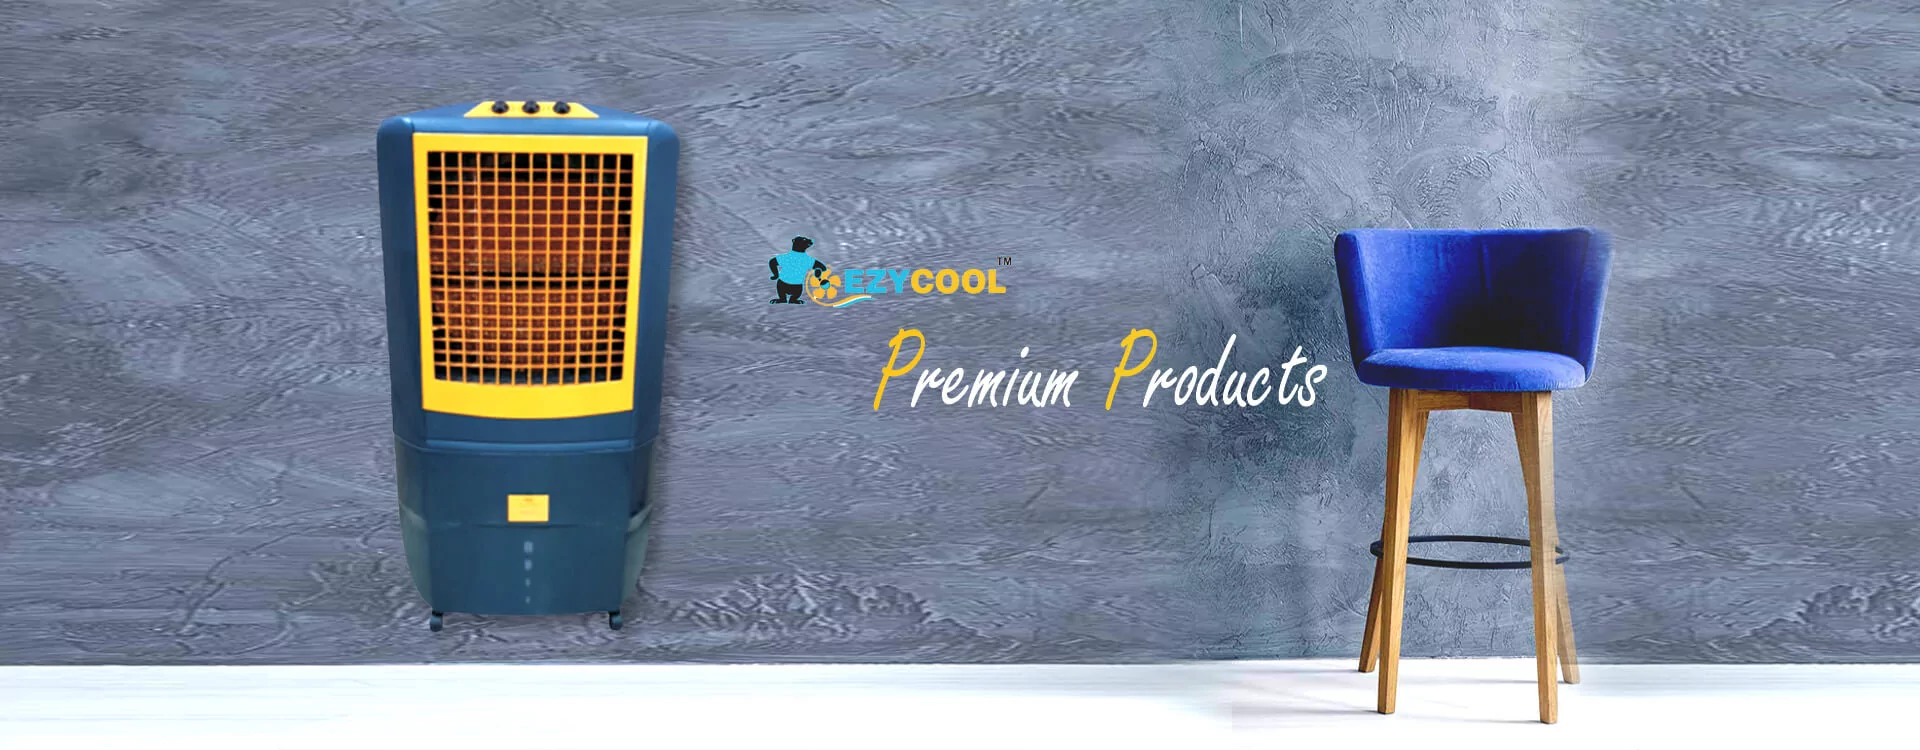 Air Cooler Manufacturer in Delhi NCR